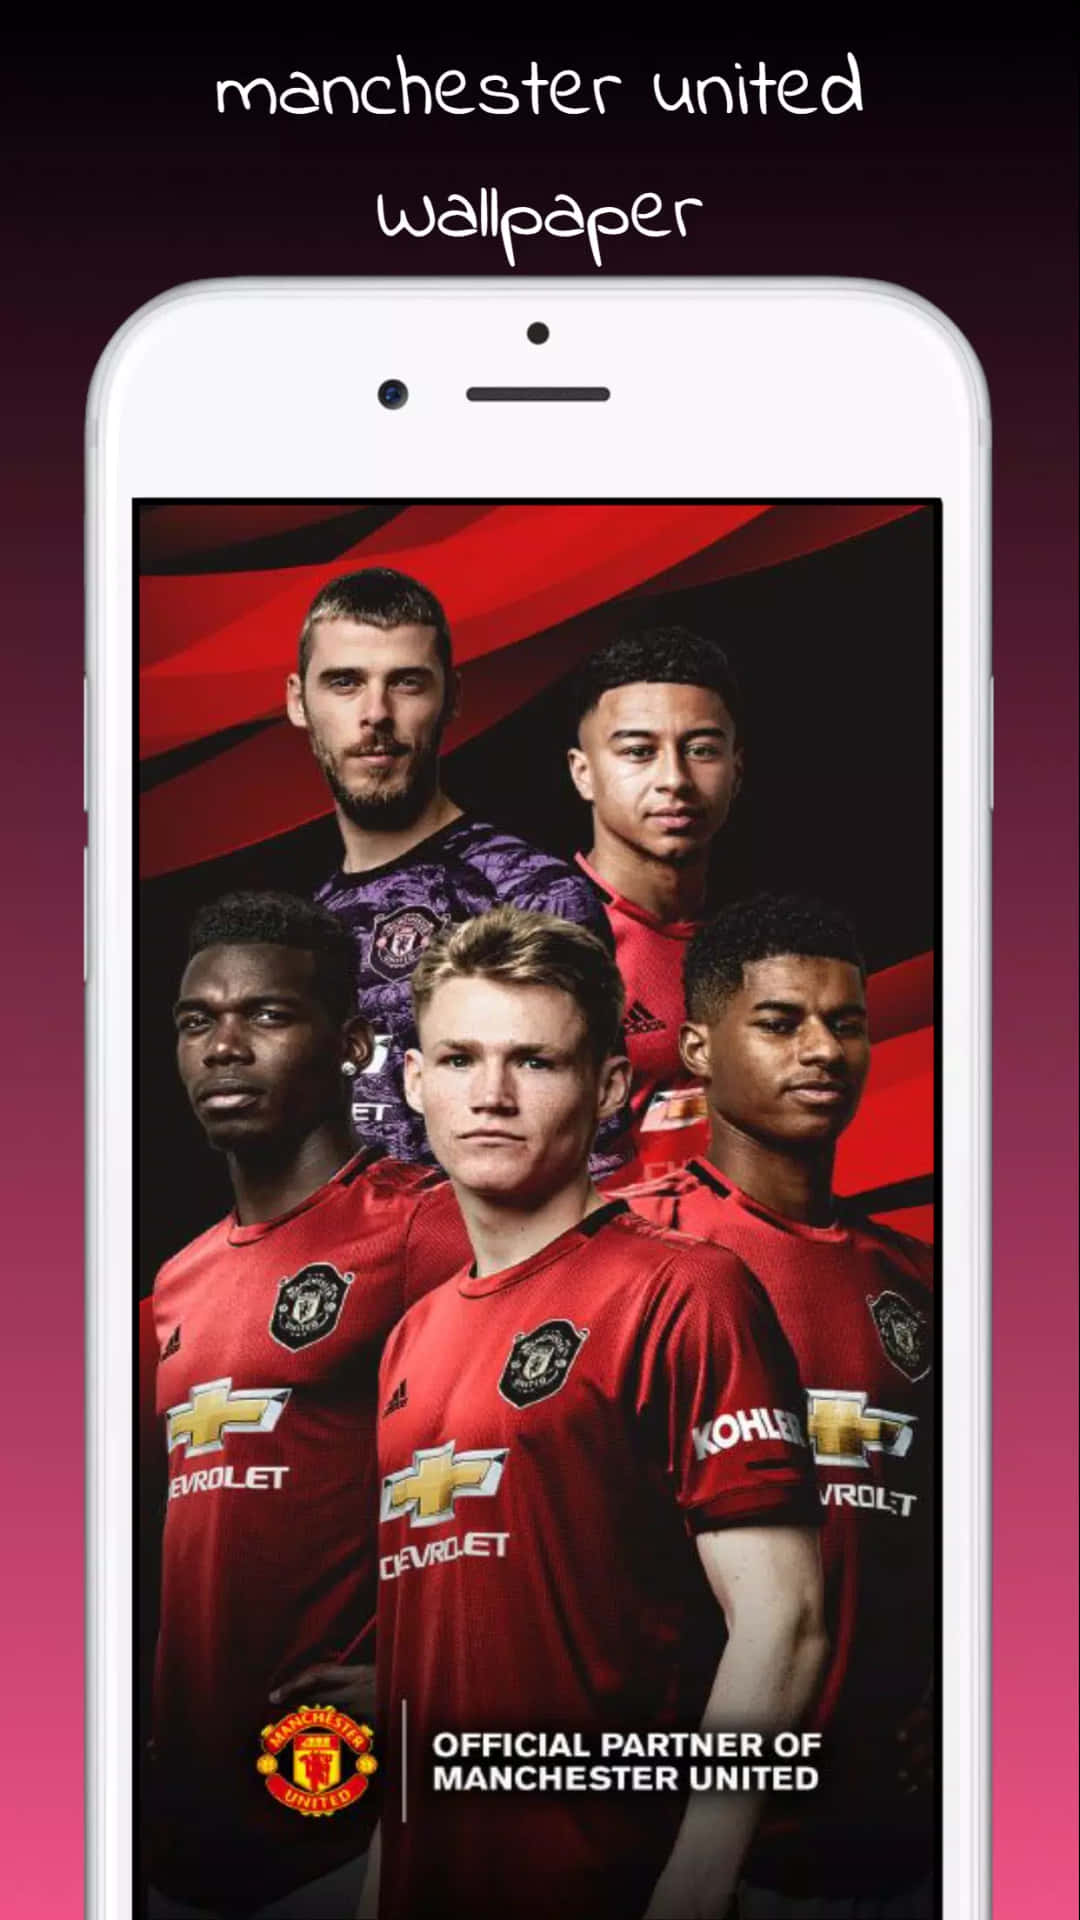 Detfantastiska Manchester United-laget 2020/2021. Wallpaper